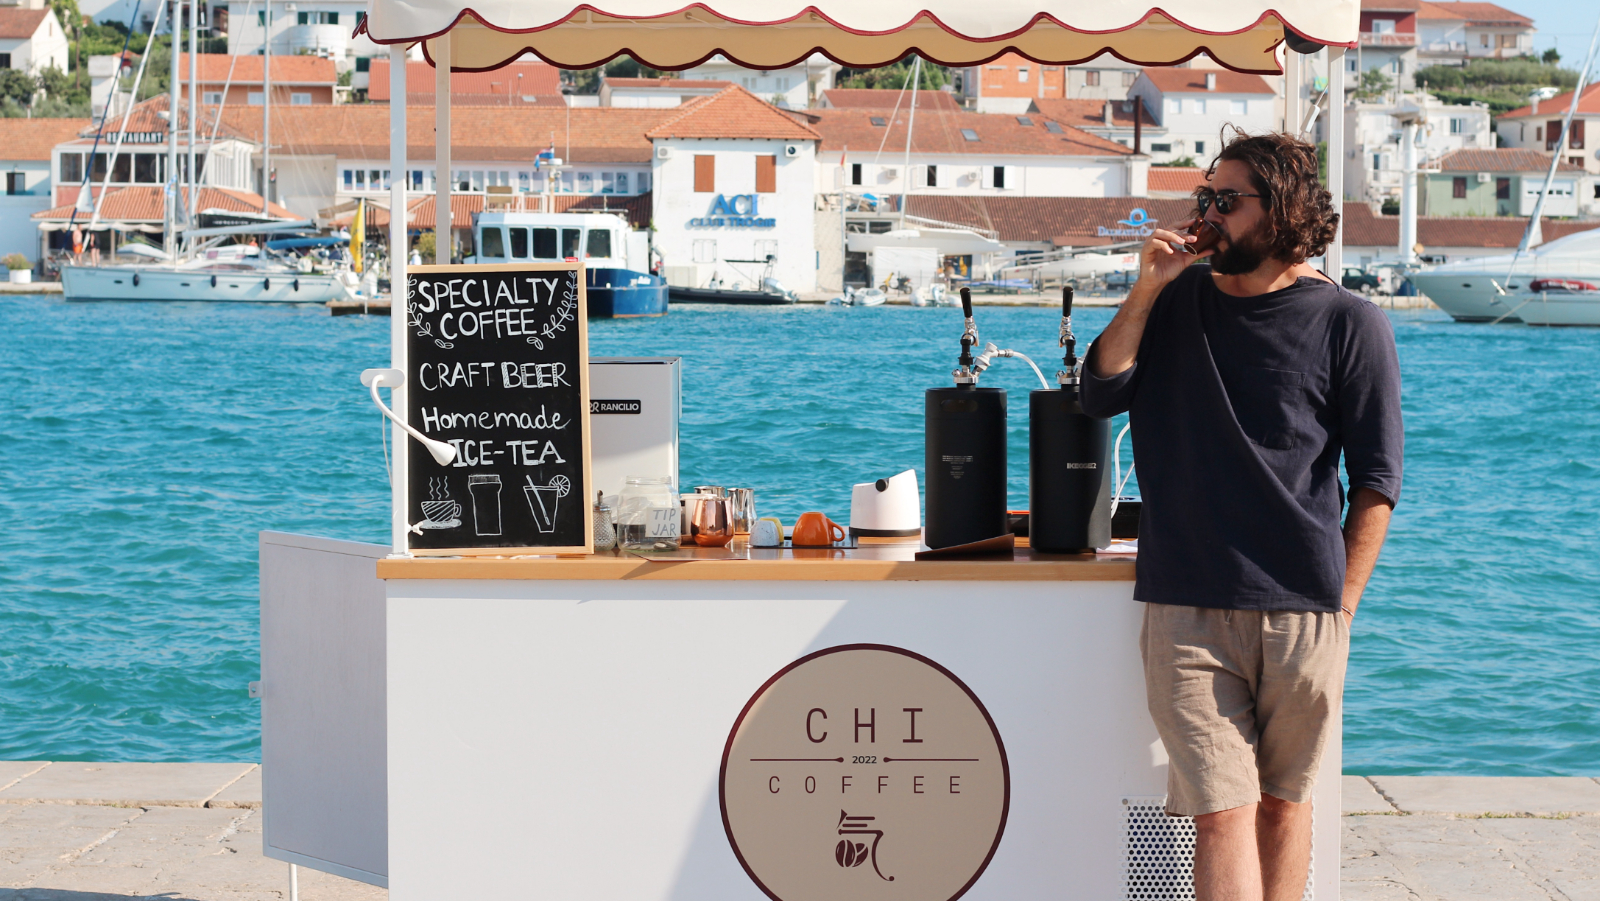 U Trogiru je otvoren Chi Coffee, prvi specialty coffee cart u Hrvatskoj